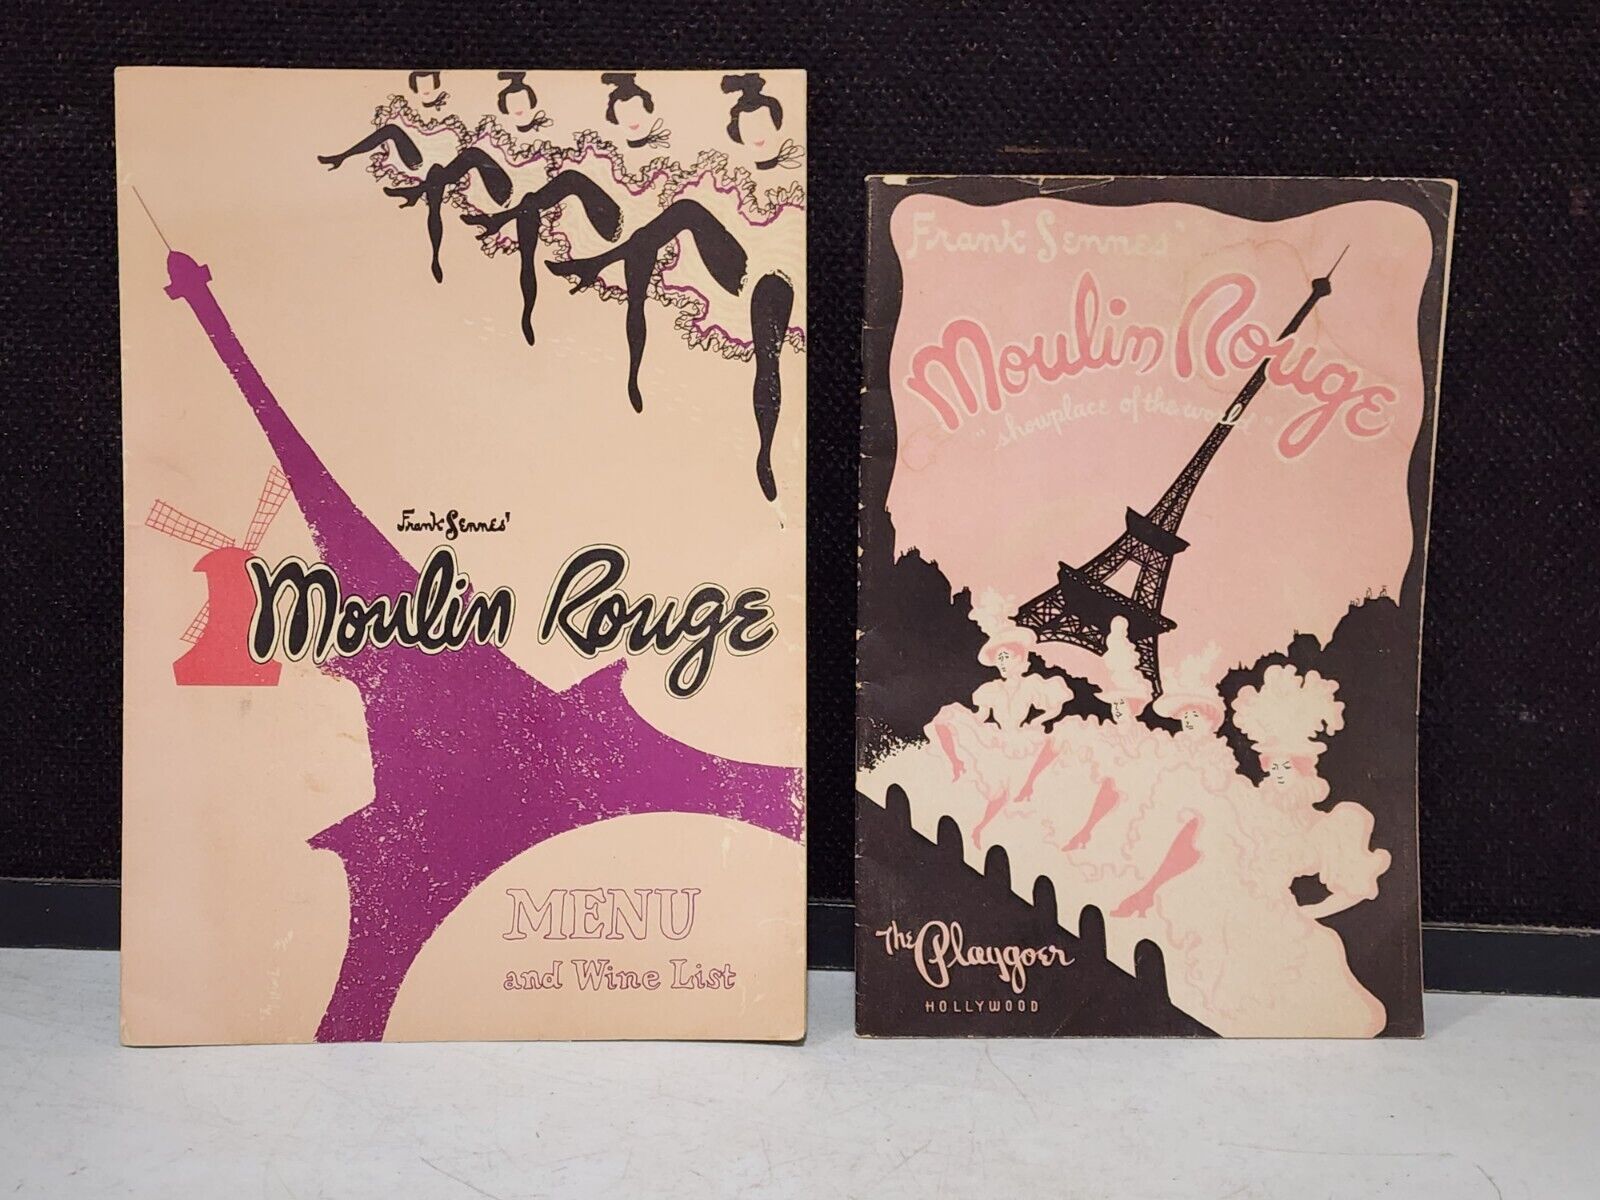 1959 Frank Sennes' Moulin Rouge Menu and Playgoer Program